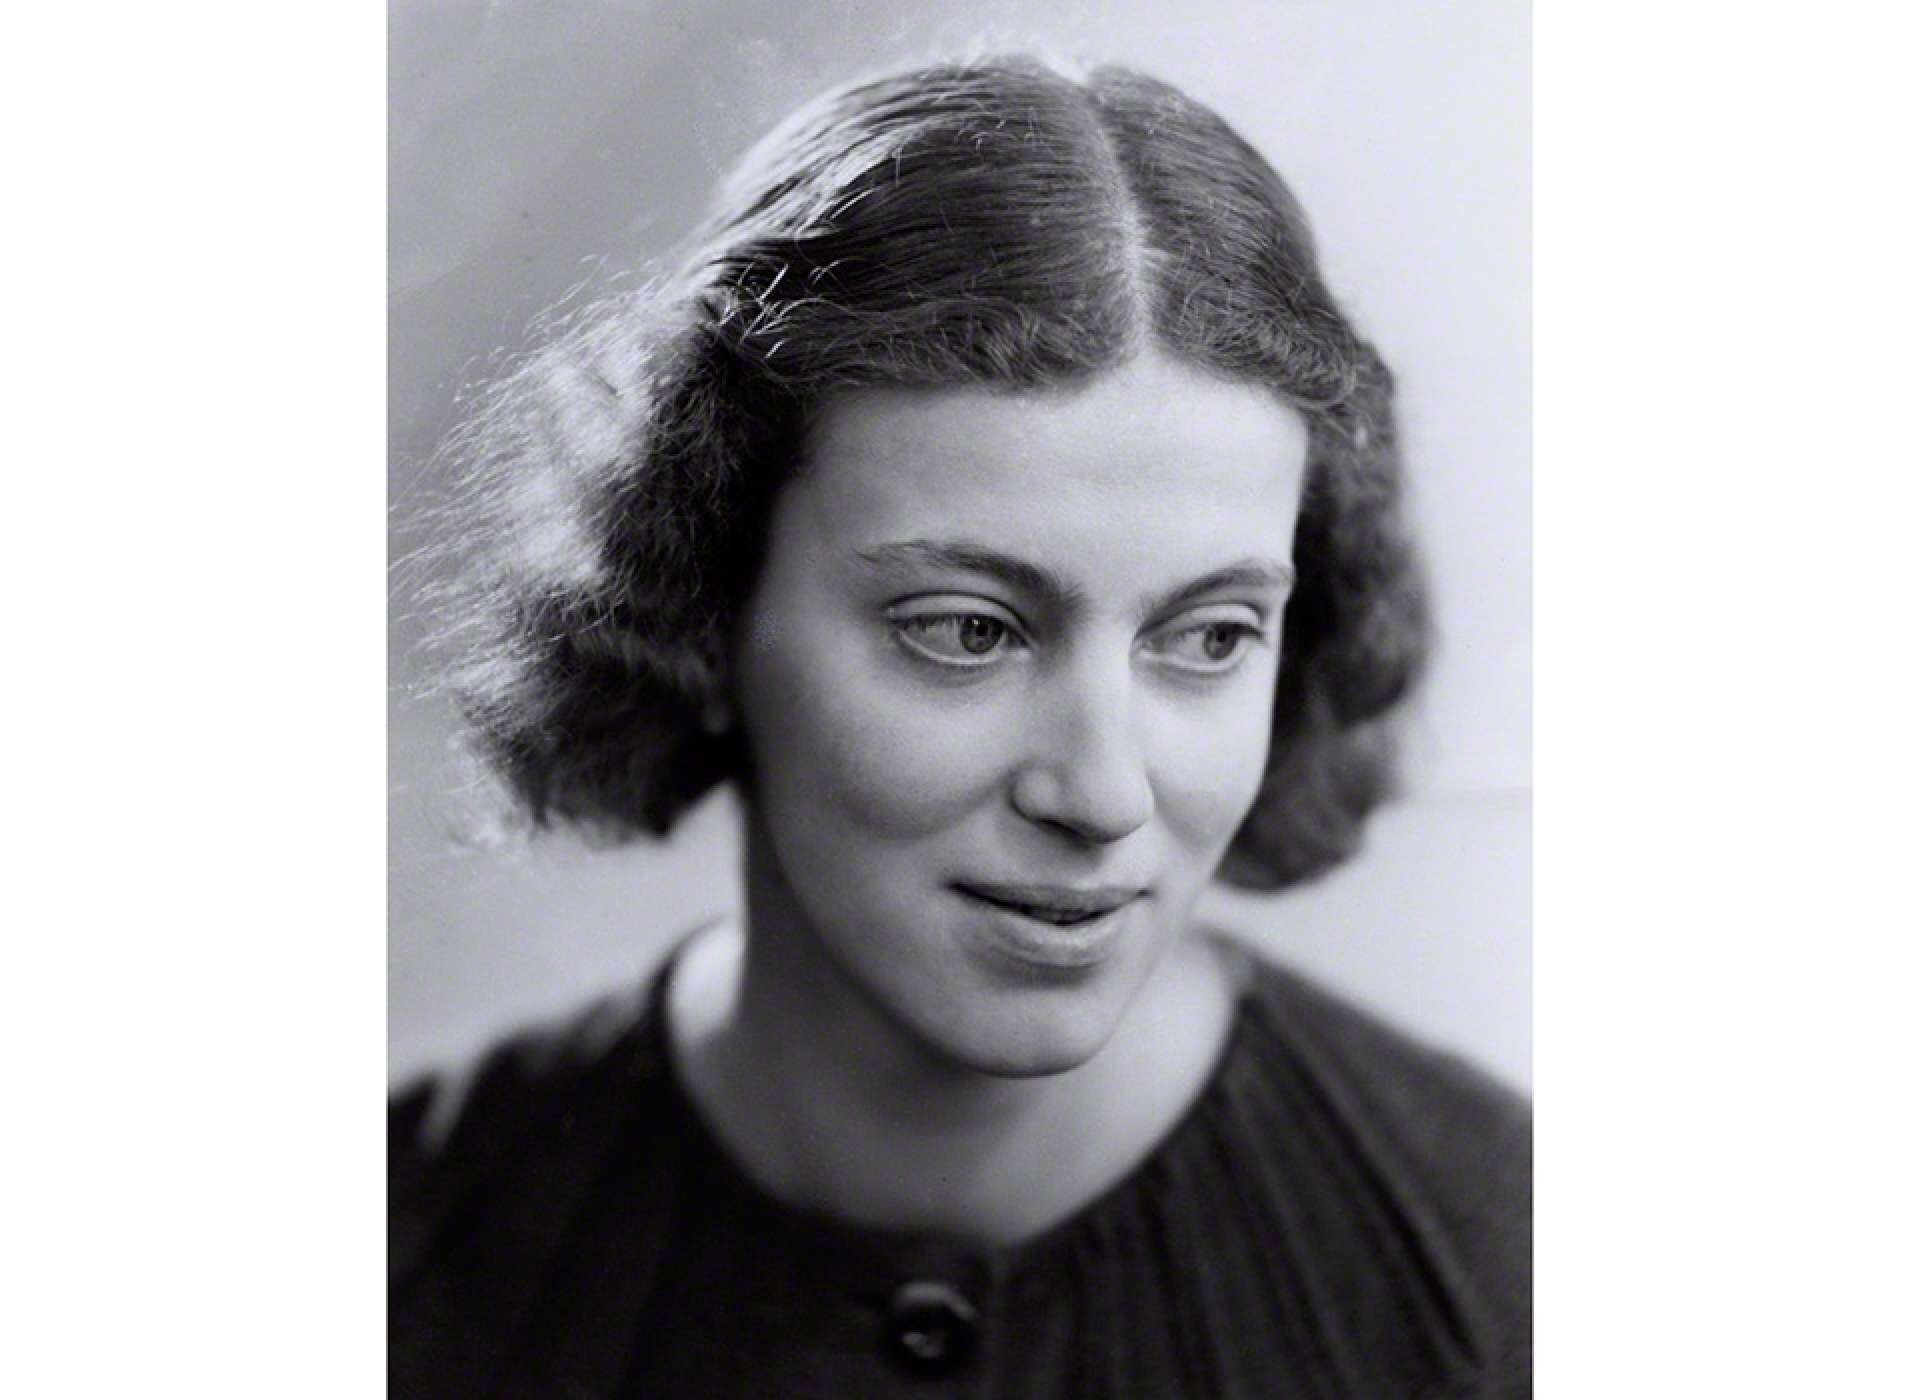 Sinh ra ở Ai Cập vào năm 1910, tình yêu khoa học của Dorothy Hodgkin được khơi dậy từ khi còn trẻ. Cha mẹ là người có học thức lớn và giàu nghị lực, điều này gieo mầm cảm hứng để bà ấy tiếp xúc với những môn khoa học từ khảo cổ học đến thực vật học. (Ảnh: nationalww2museum)